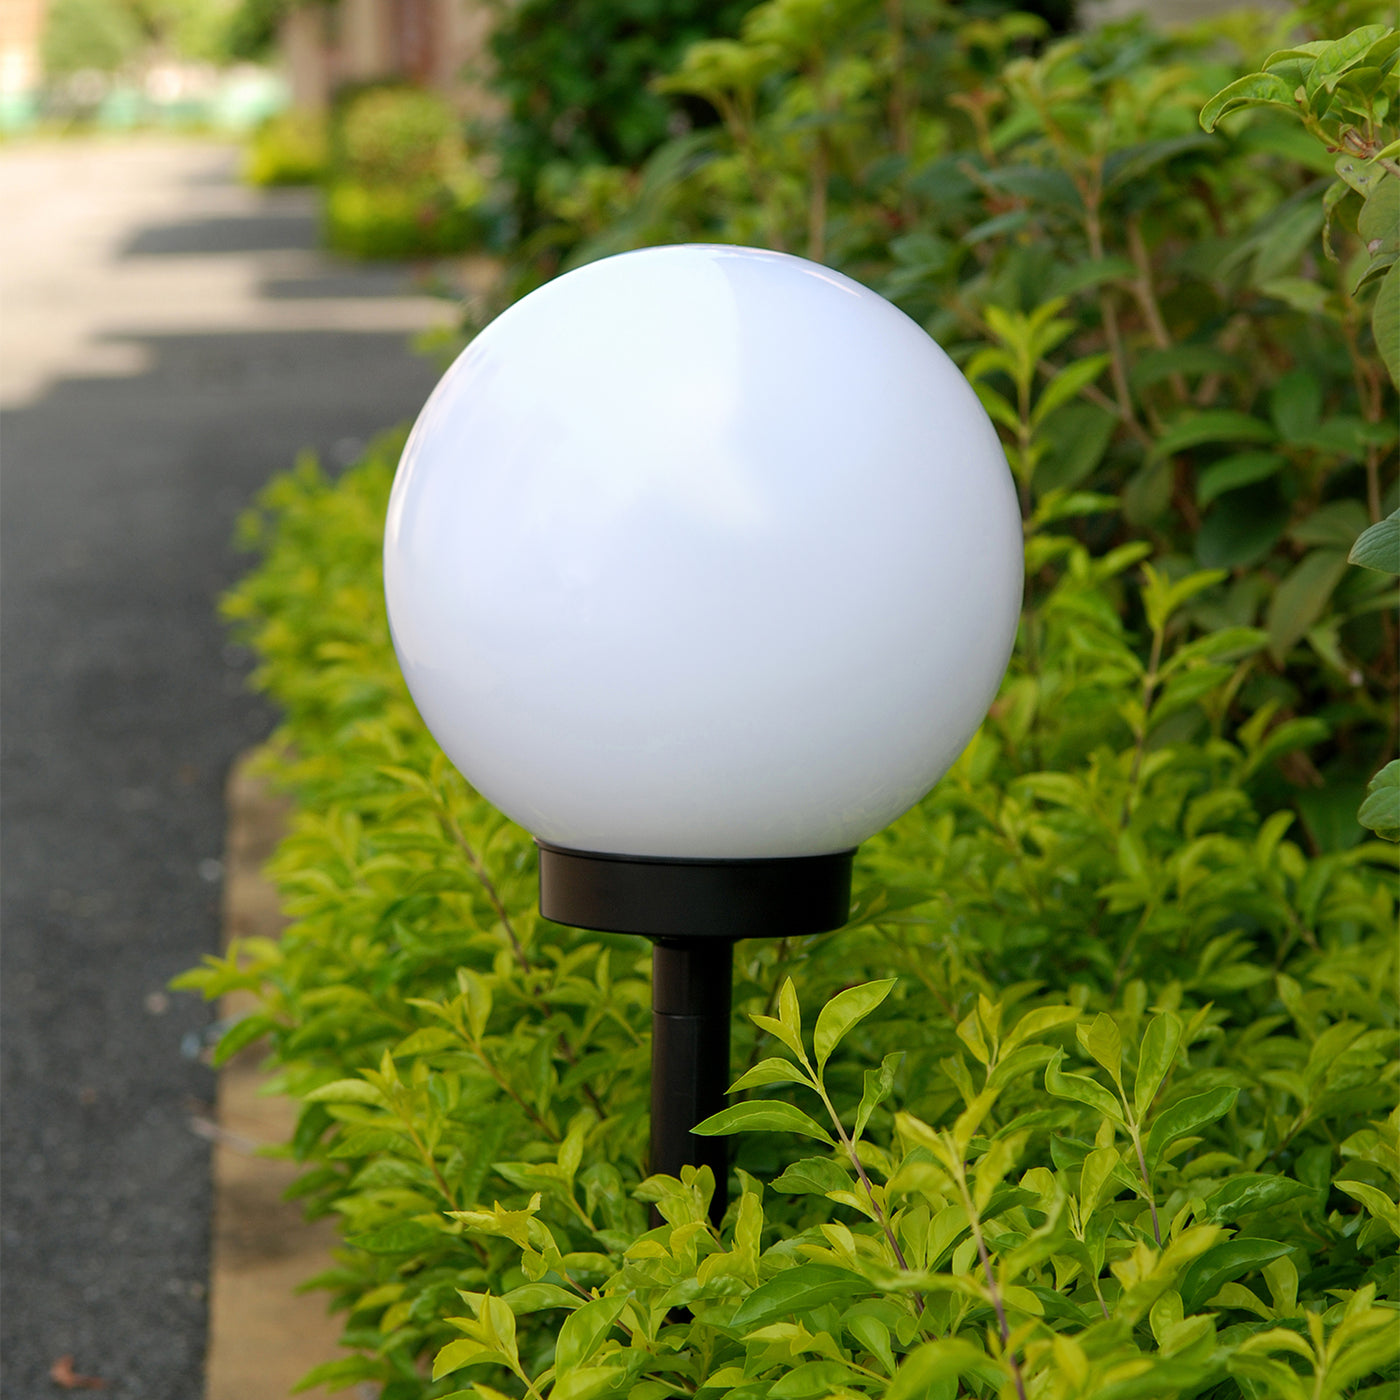 Solarna lampa GreenBlue, wolnostojąca, ogrodowa, kula 25x25x58cm, RGB LED, GB165